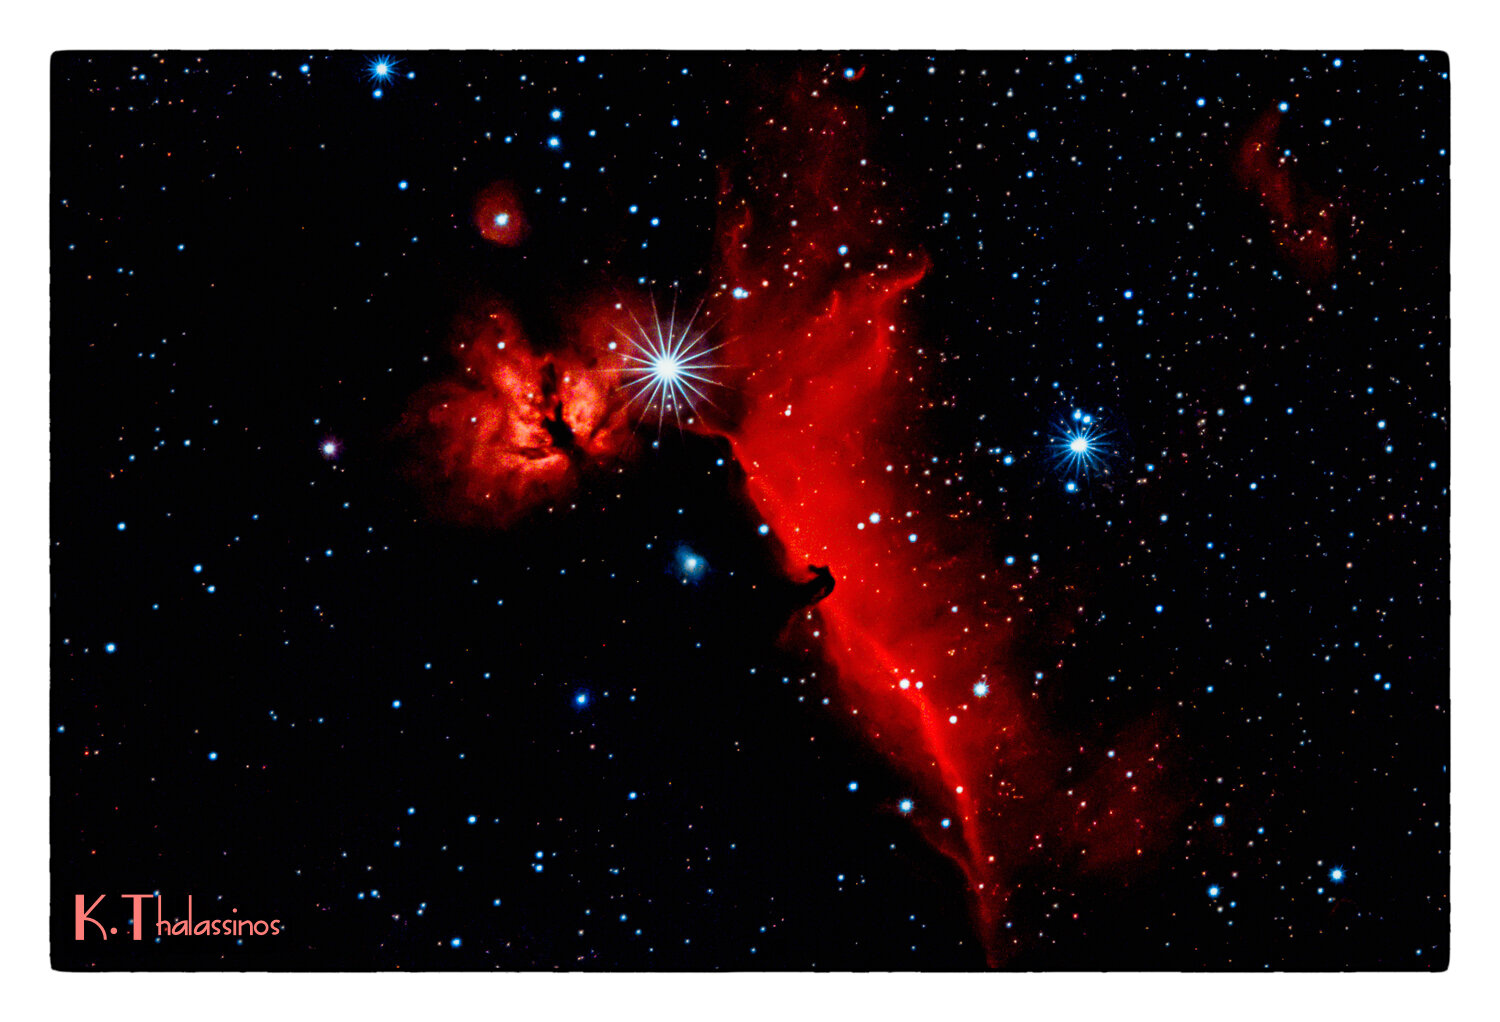 Ηorsehead Nebula